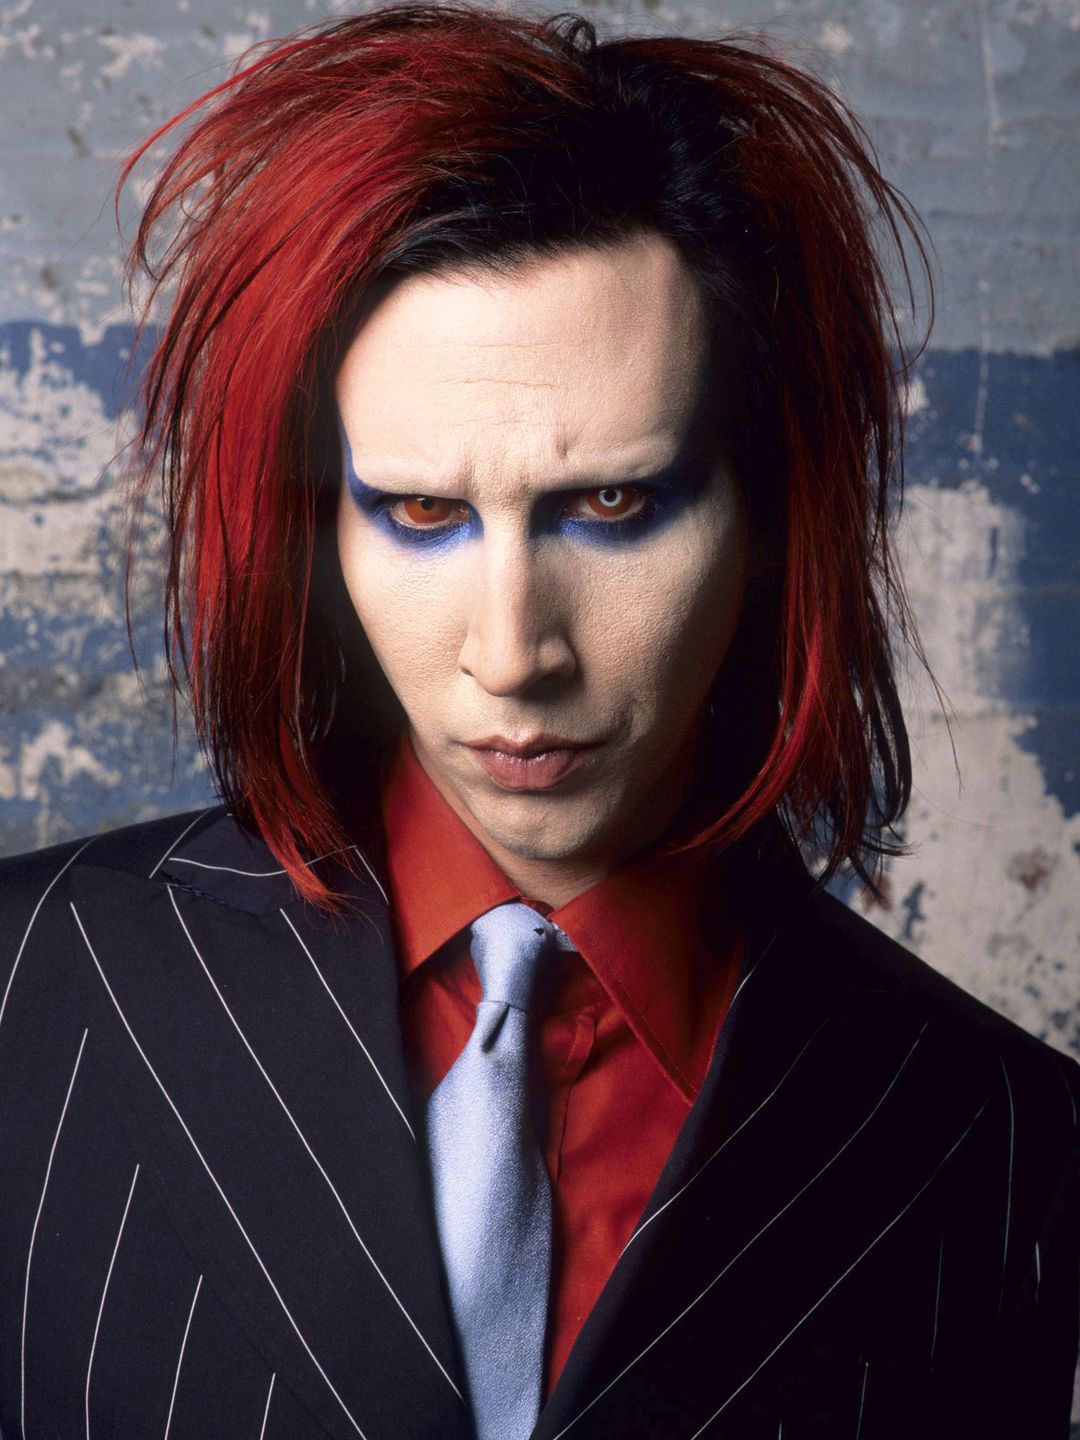 Marilyn Manson date of birth